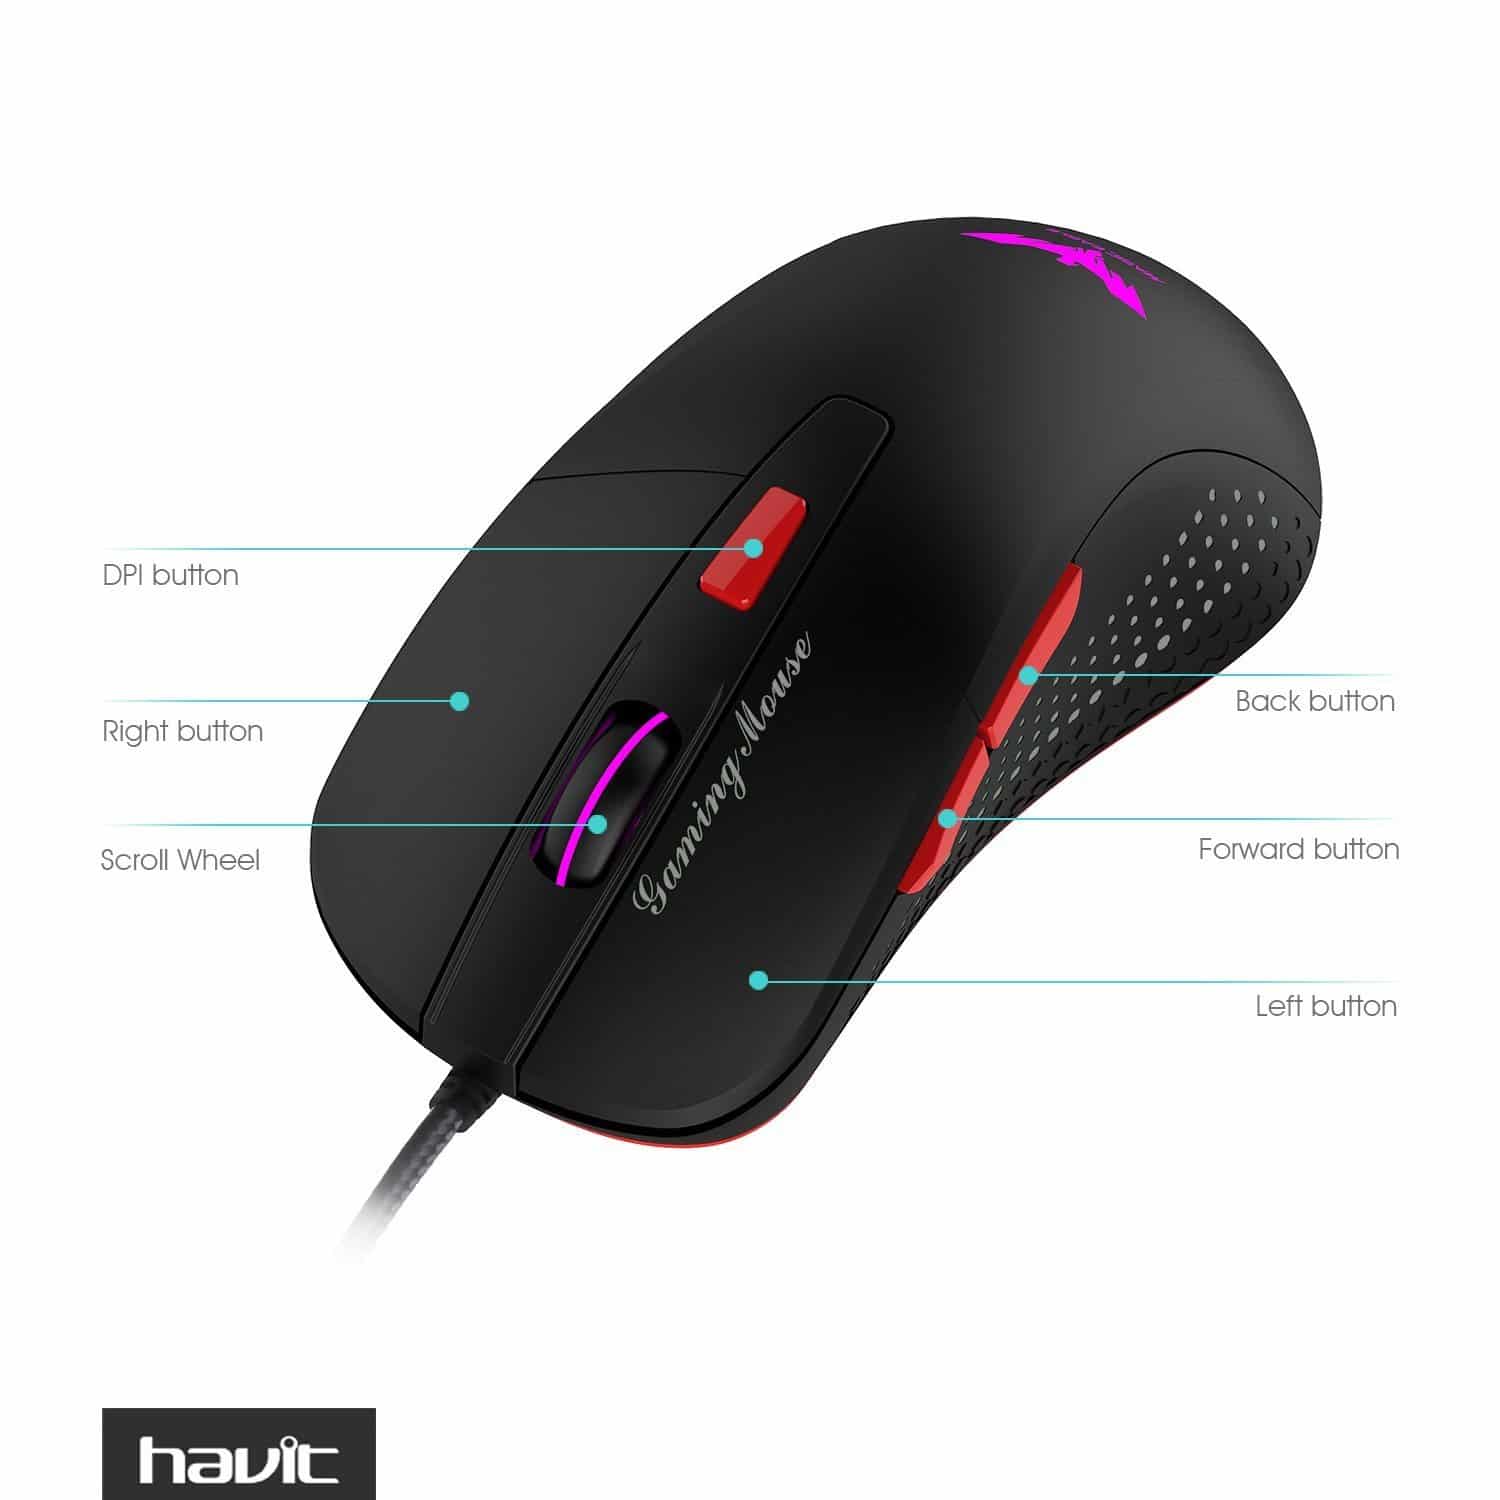 HAVIT HV-MS745 Ergonomic Gaming Mouse with AVAGO 5050, 2800 DPI, 4 LED